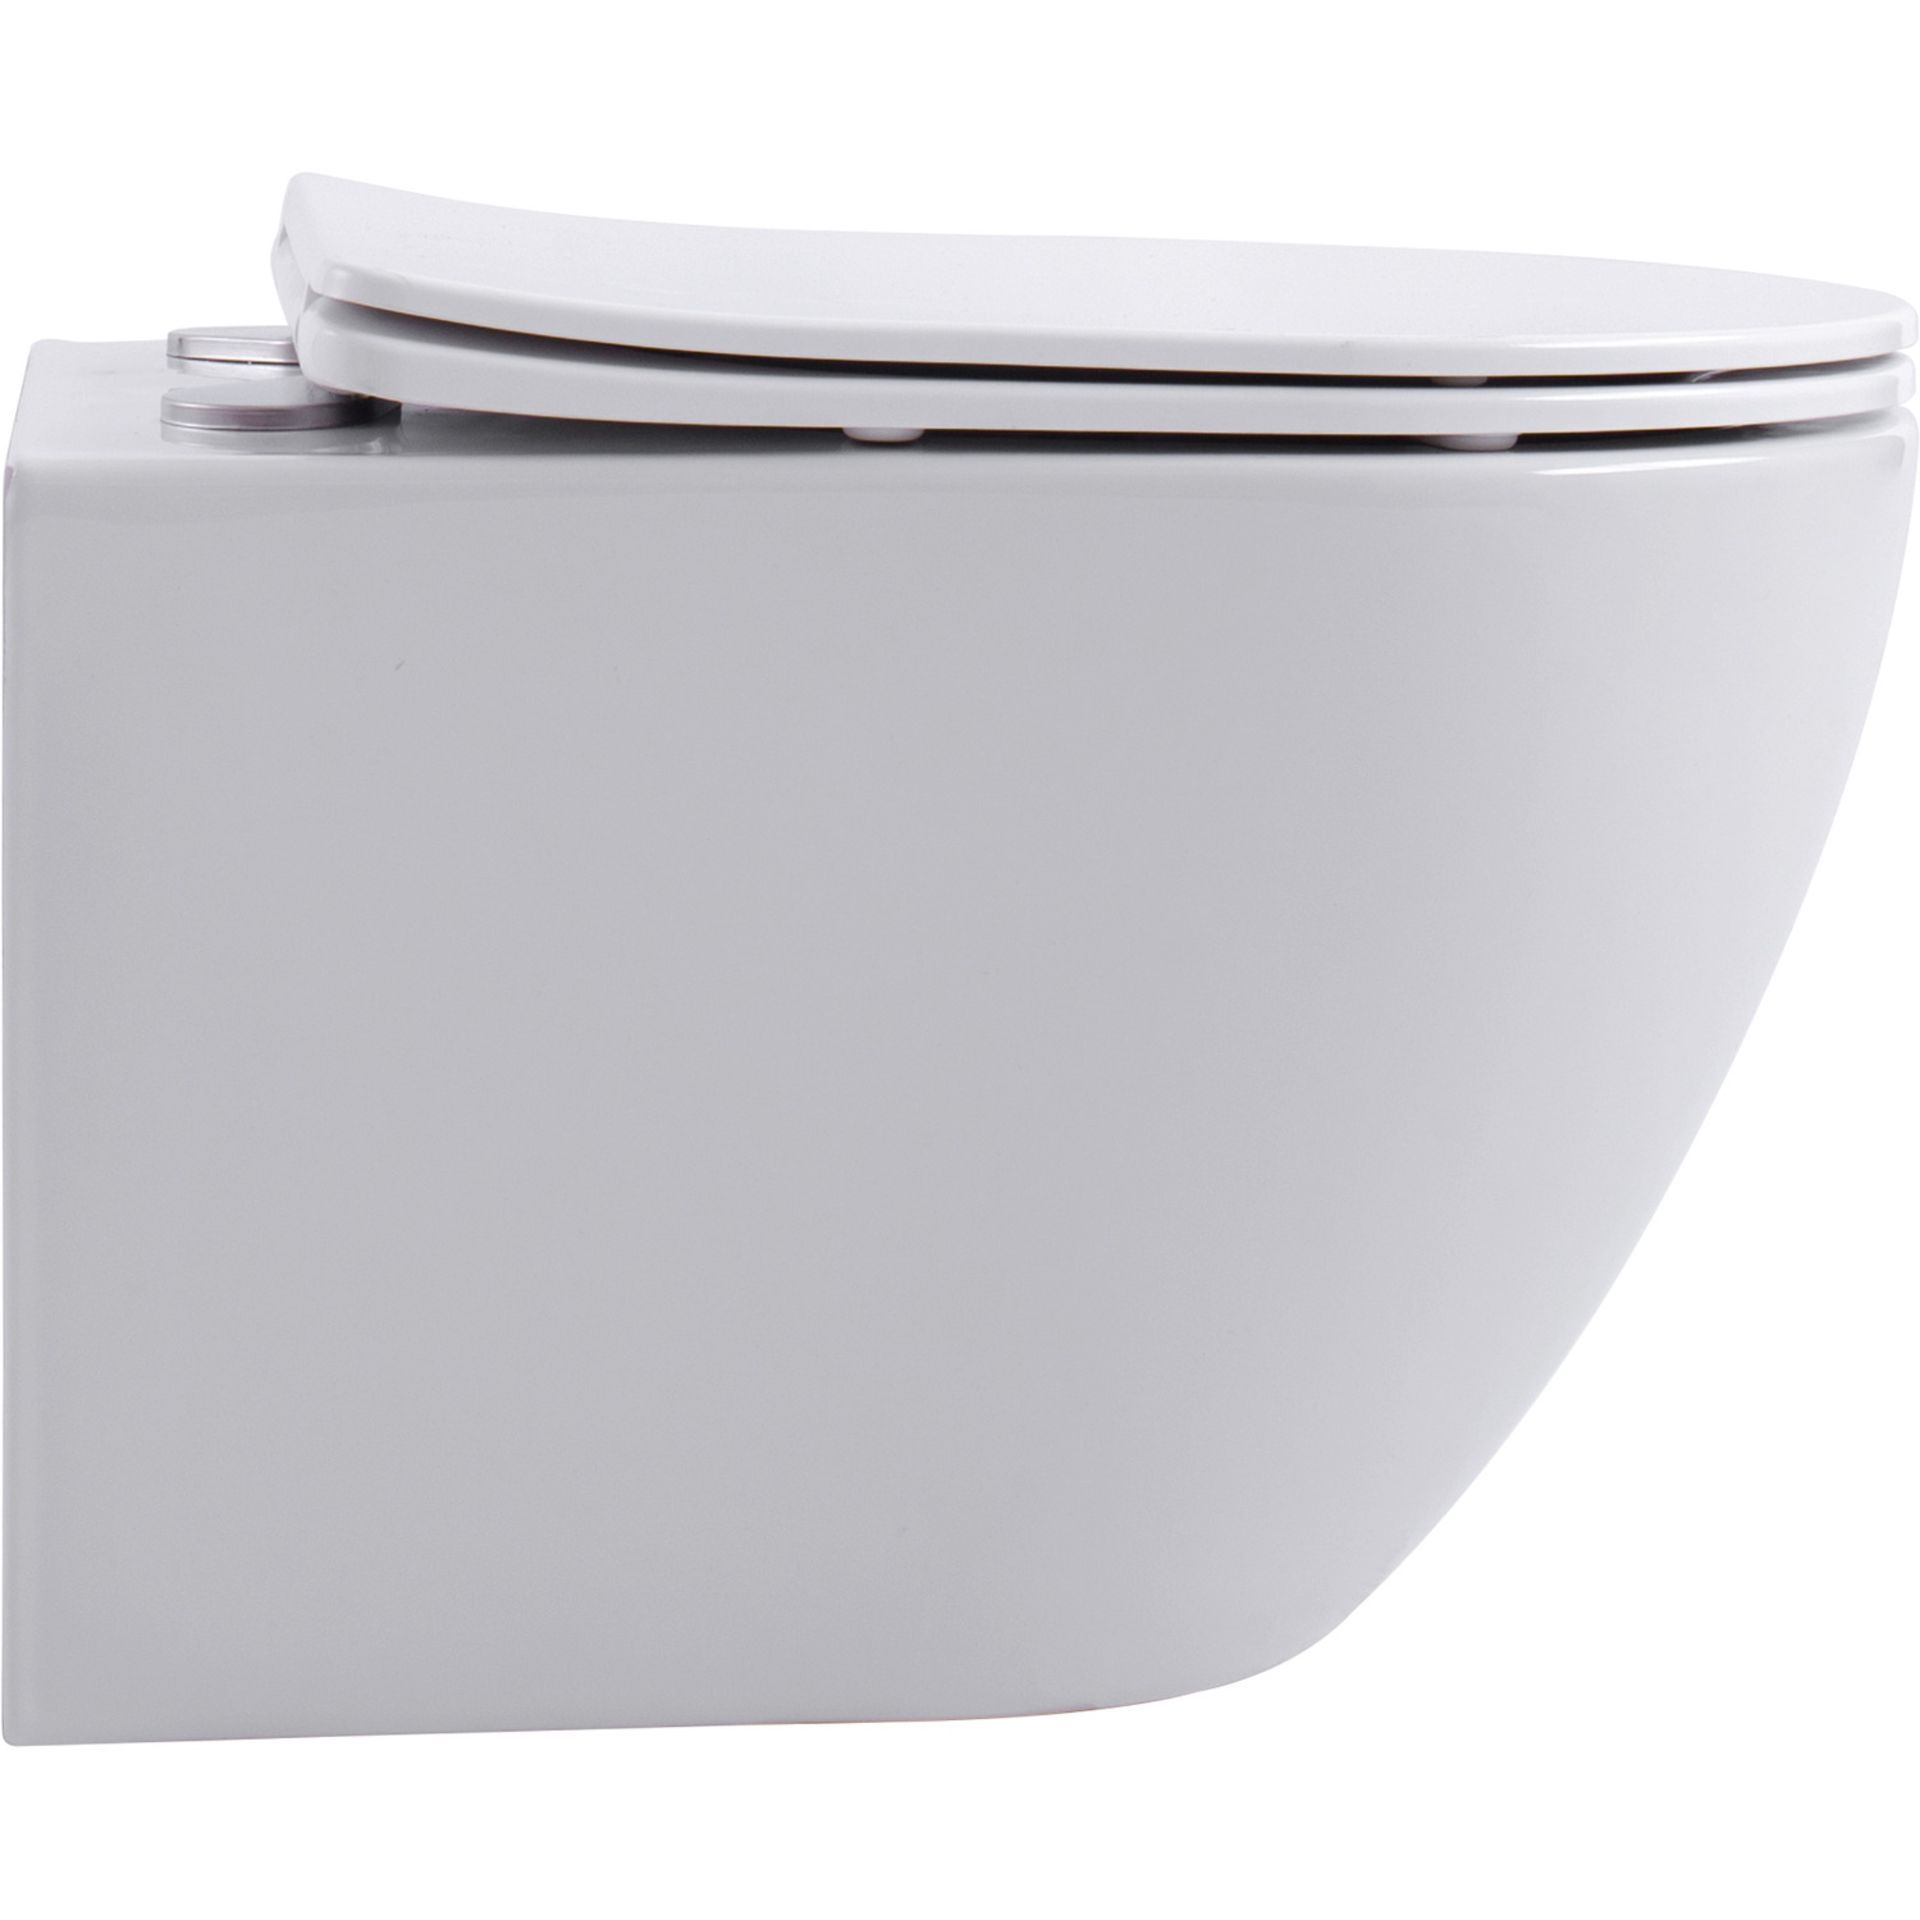 NEW & BOXED KARCENT Rimless Washdown Wall Hung Toilet. MATT WHITE. This Rimless Matt White wall-hung - Image 2 of 3